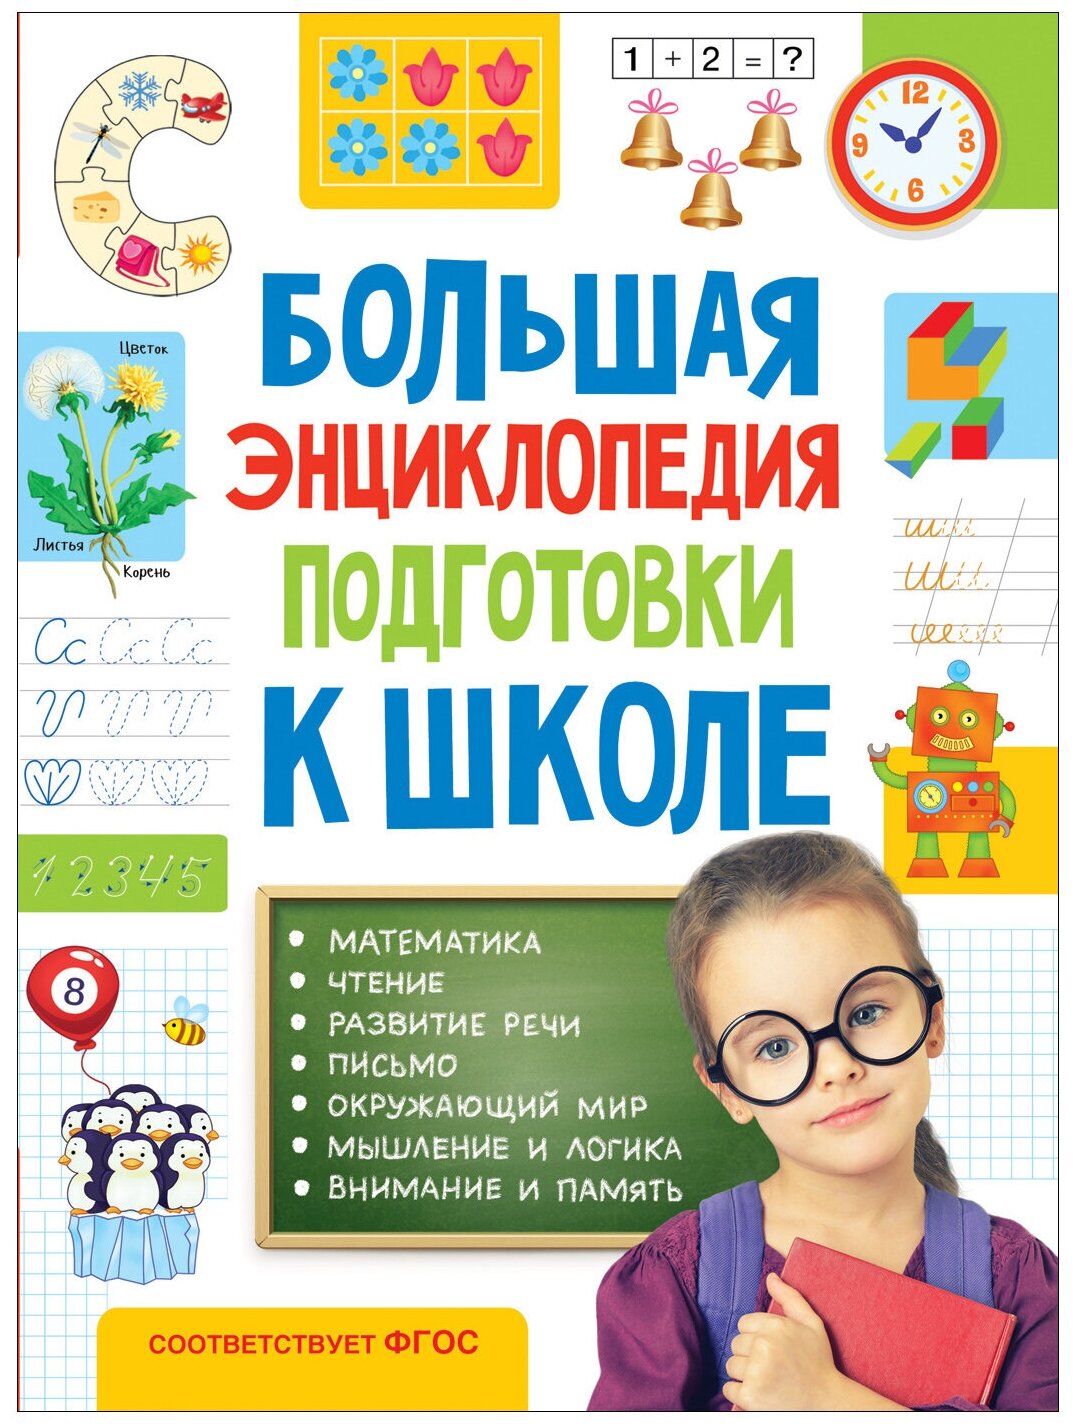 Большая энциклопедия подготовки к школе (5-7 лет)